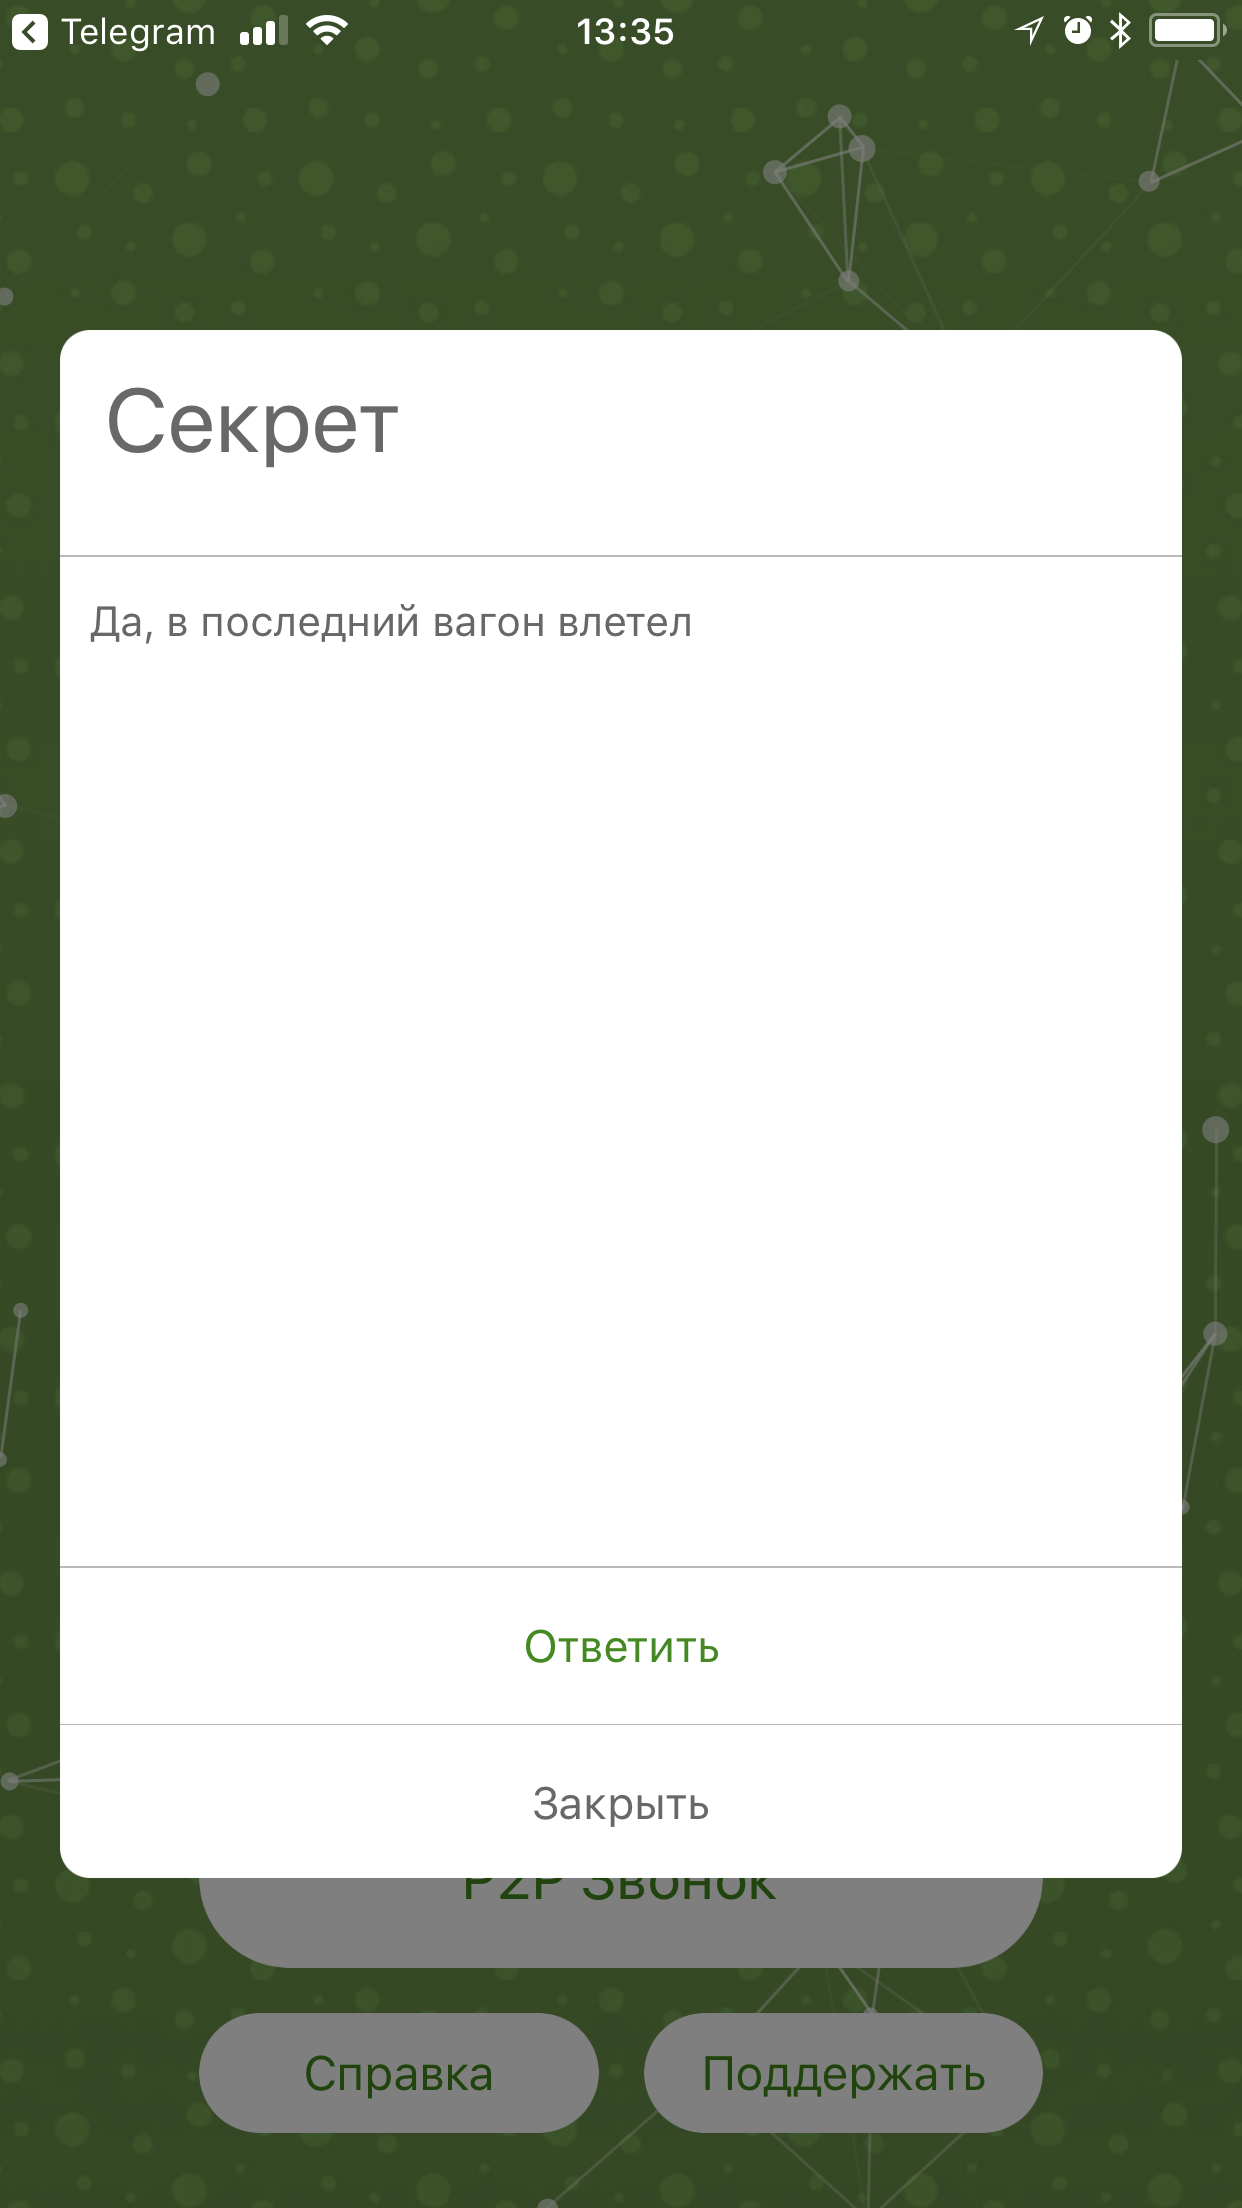 Как работает мессенджер на блокчейне для iPhone от российских разработчиков